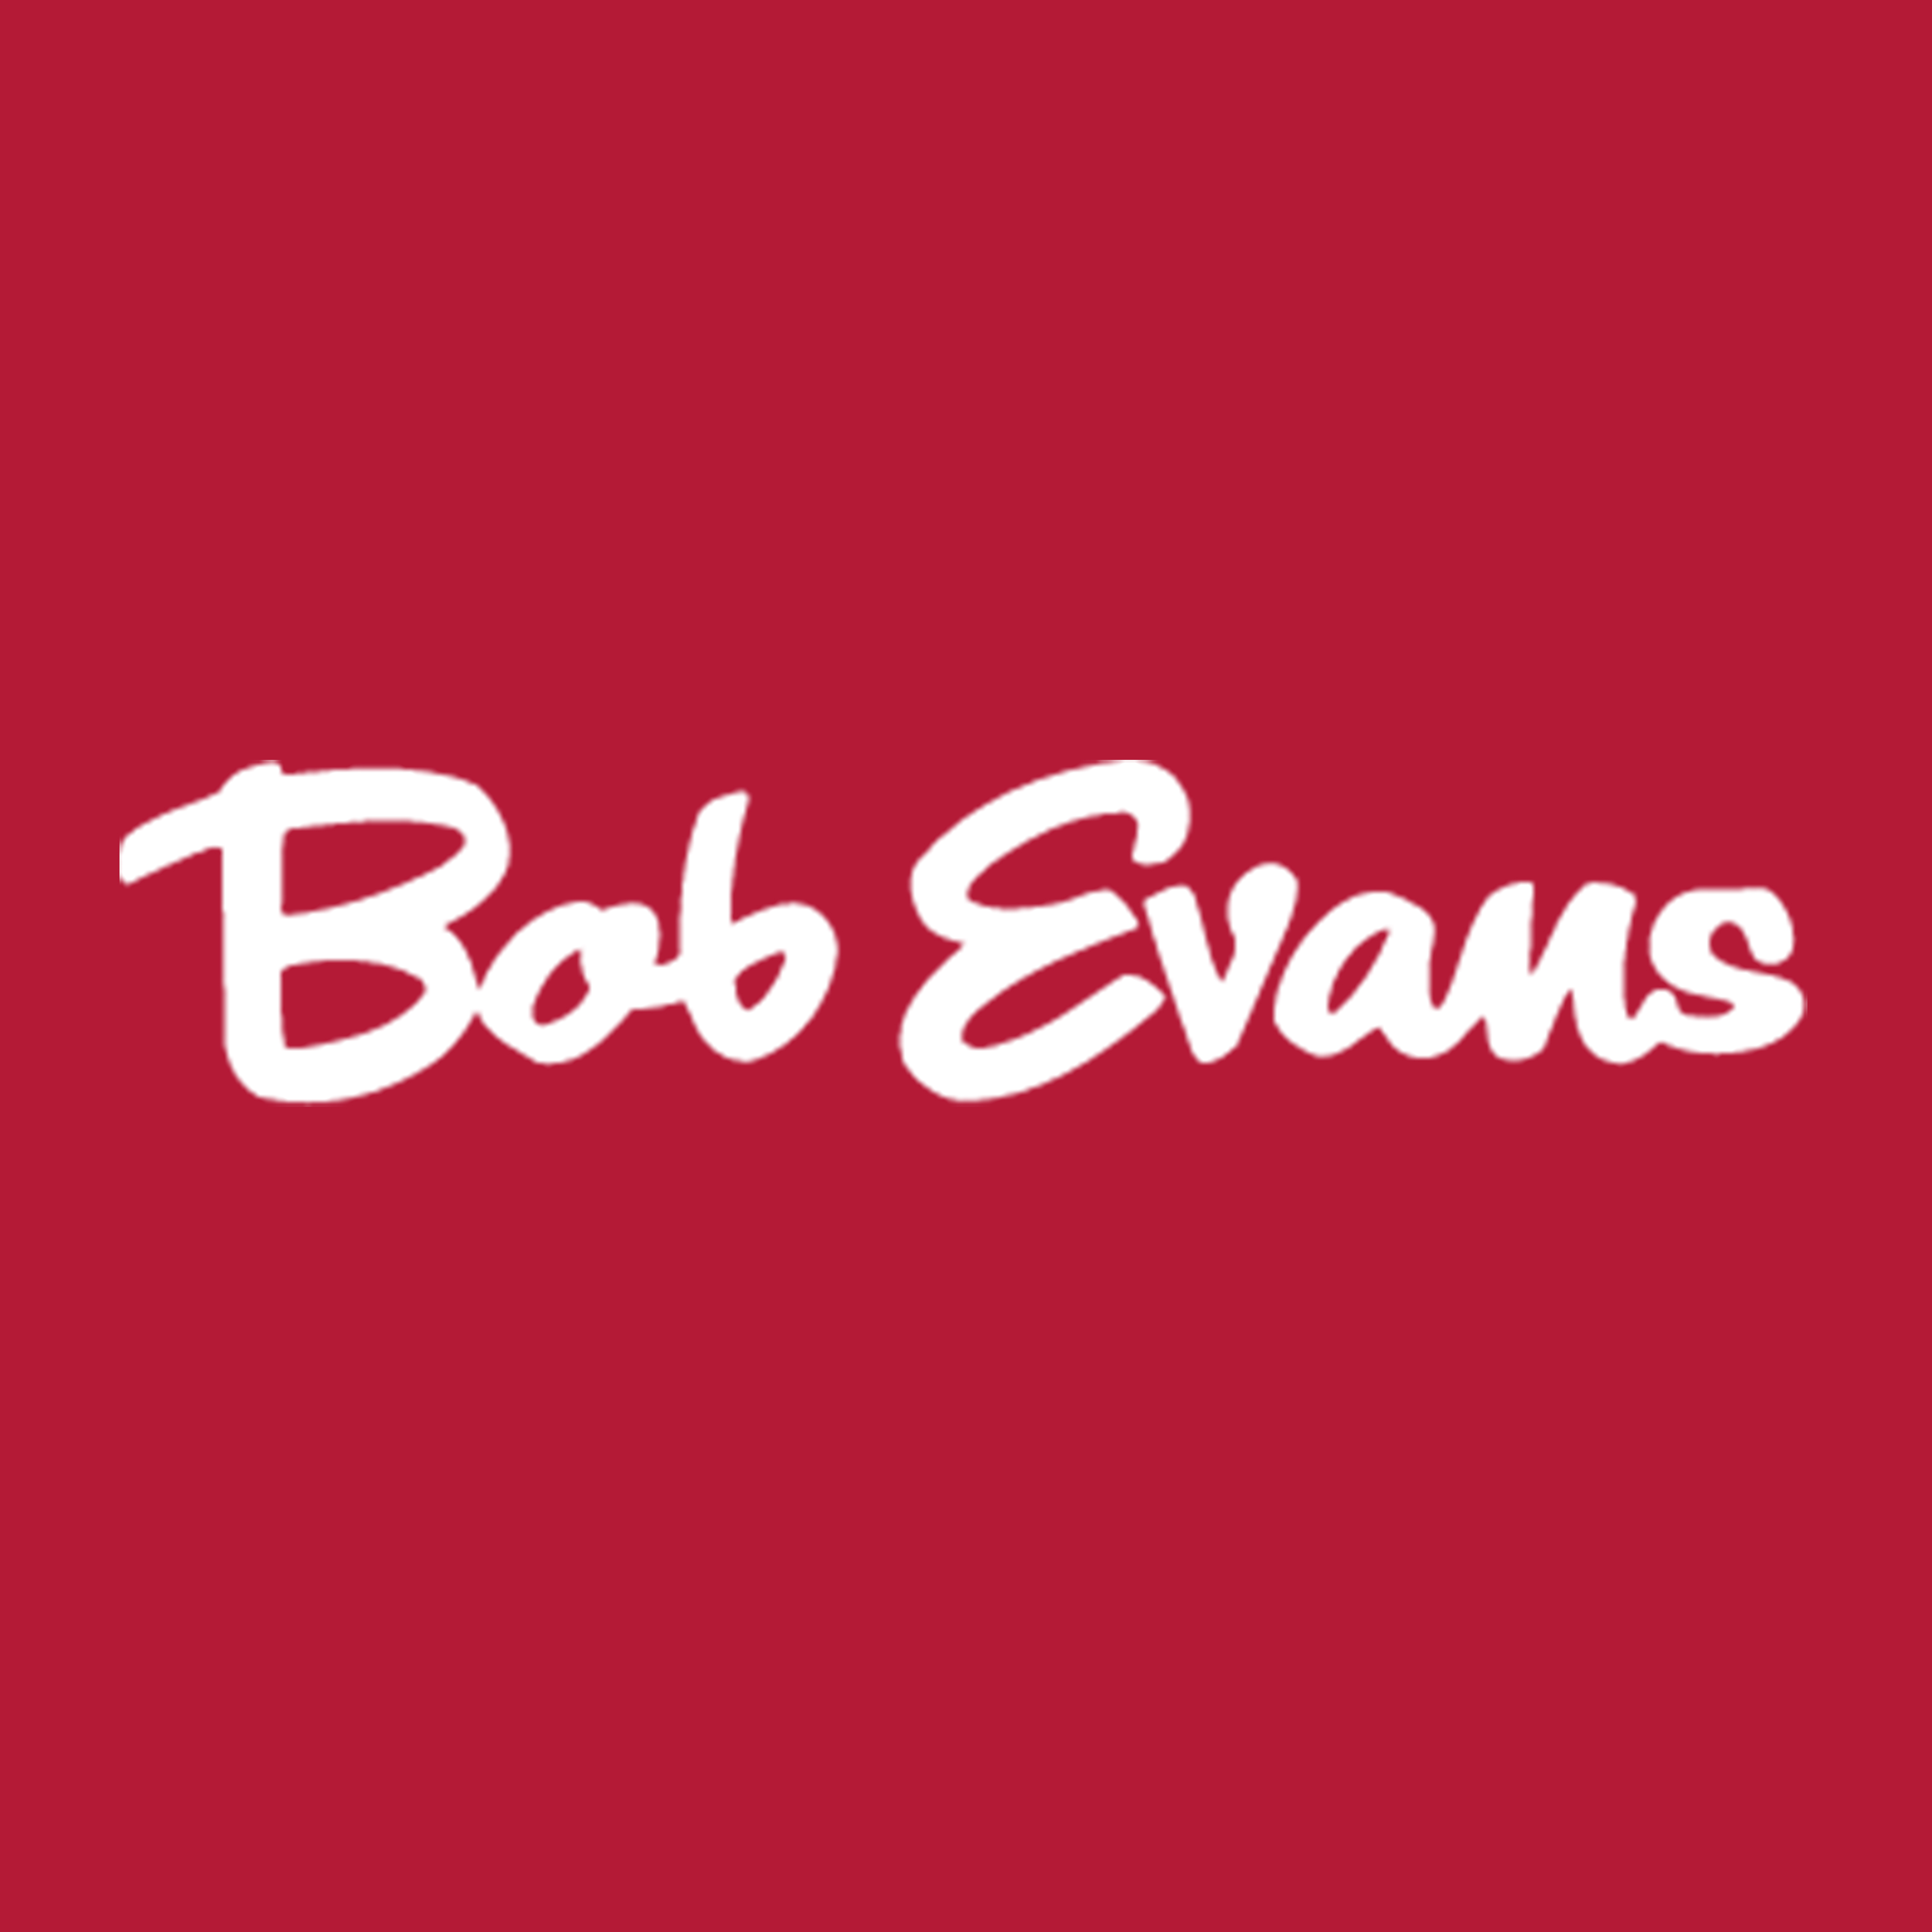 Bob Evans discount codes